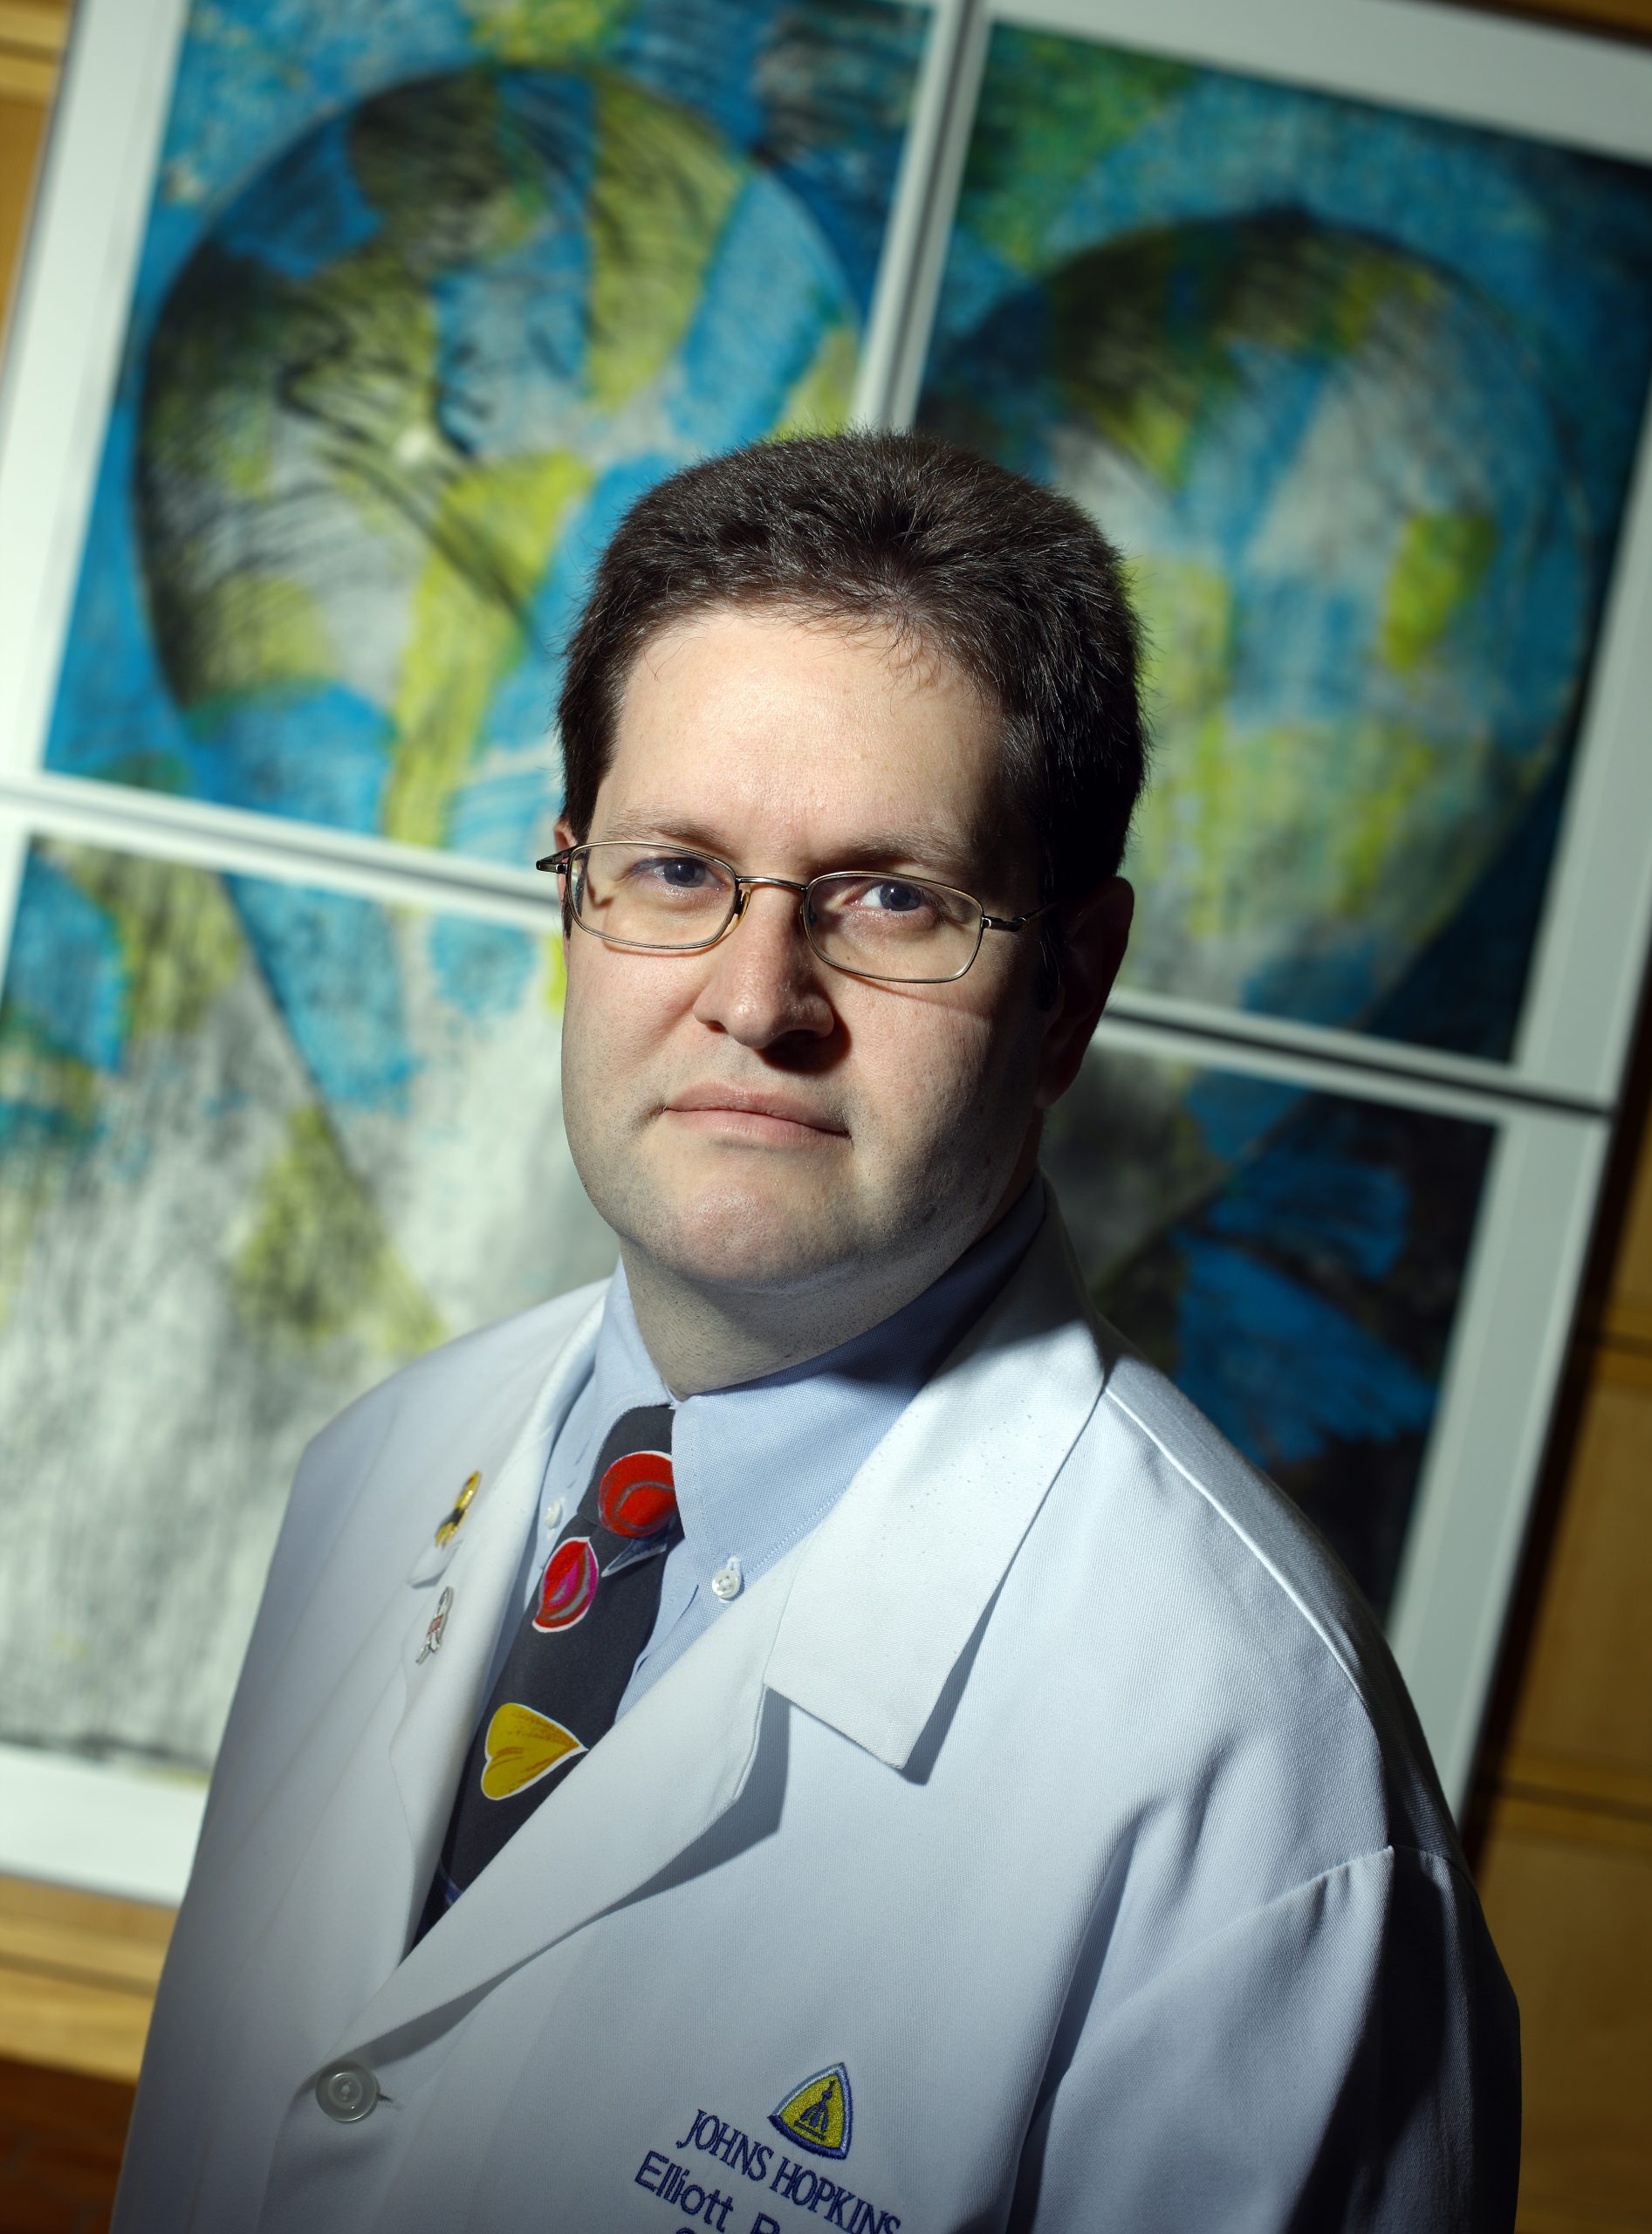 Elliott Richard Haut, MD, PhD, FACS